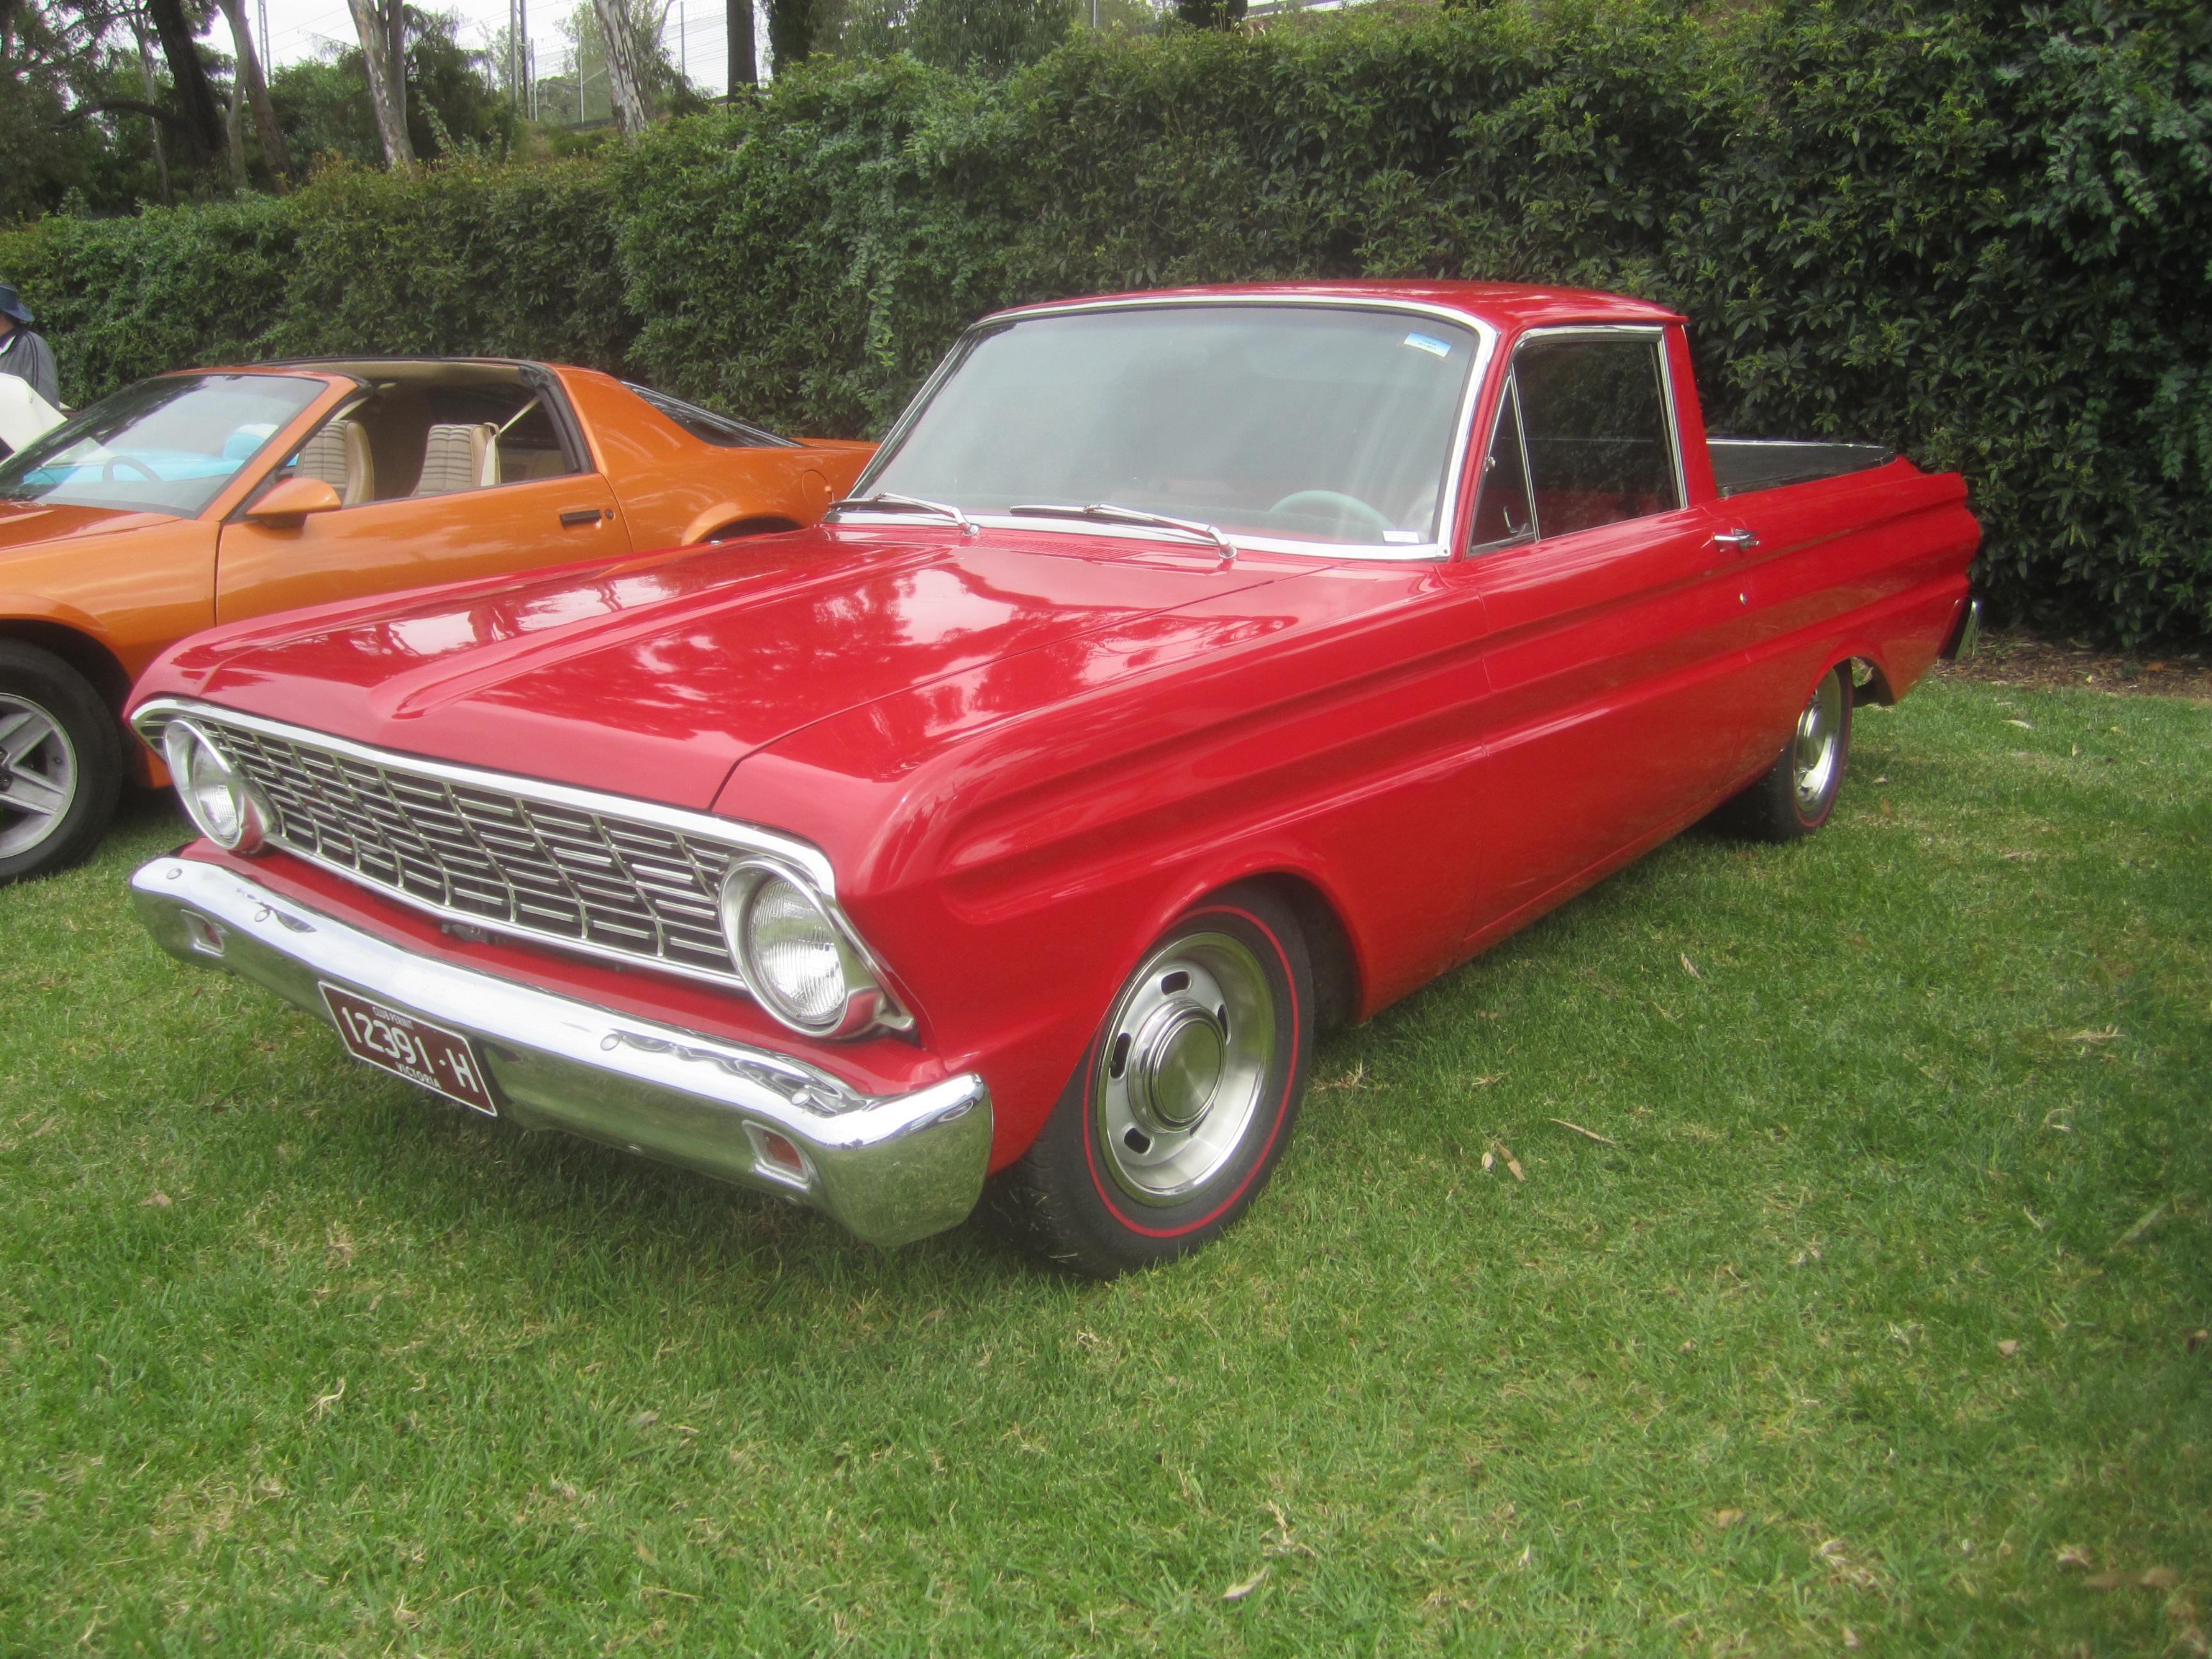 1964 Ford Ranchero Pickup | Flickr - Photo Sharing!